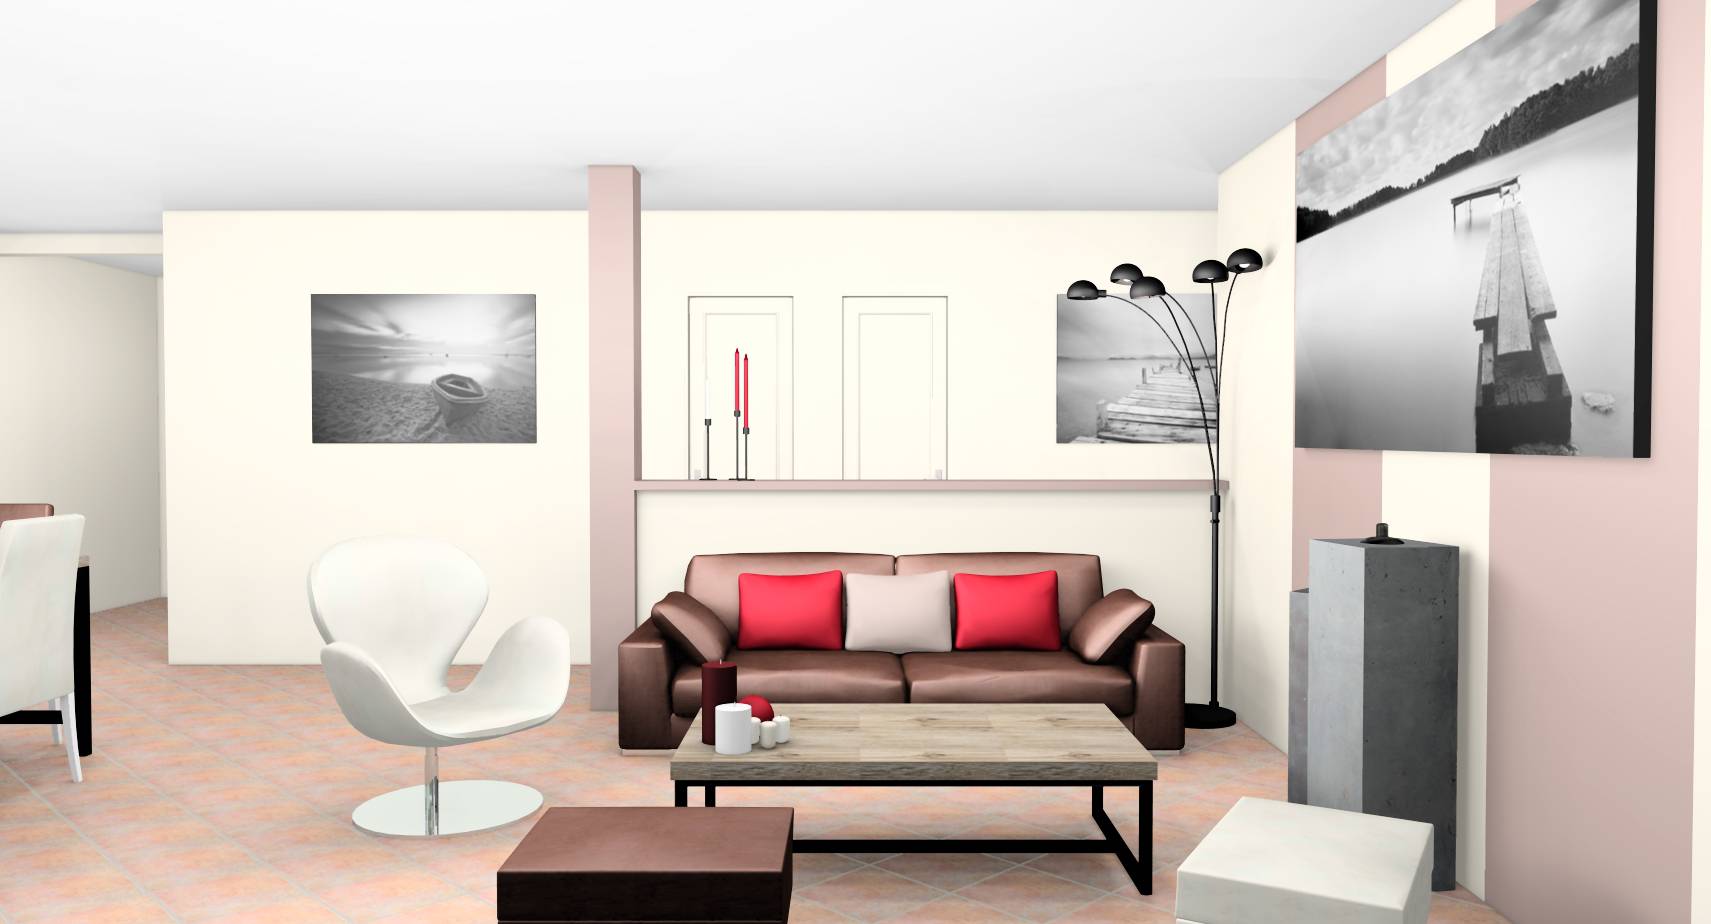 Séjour salle à manger murs lin taupe poêle tomettes ambiance industrielle chaleureuse mobilier bois blanc mat touches rouges